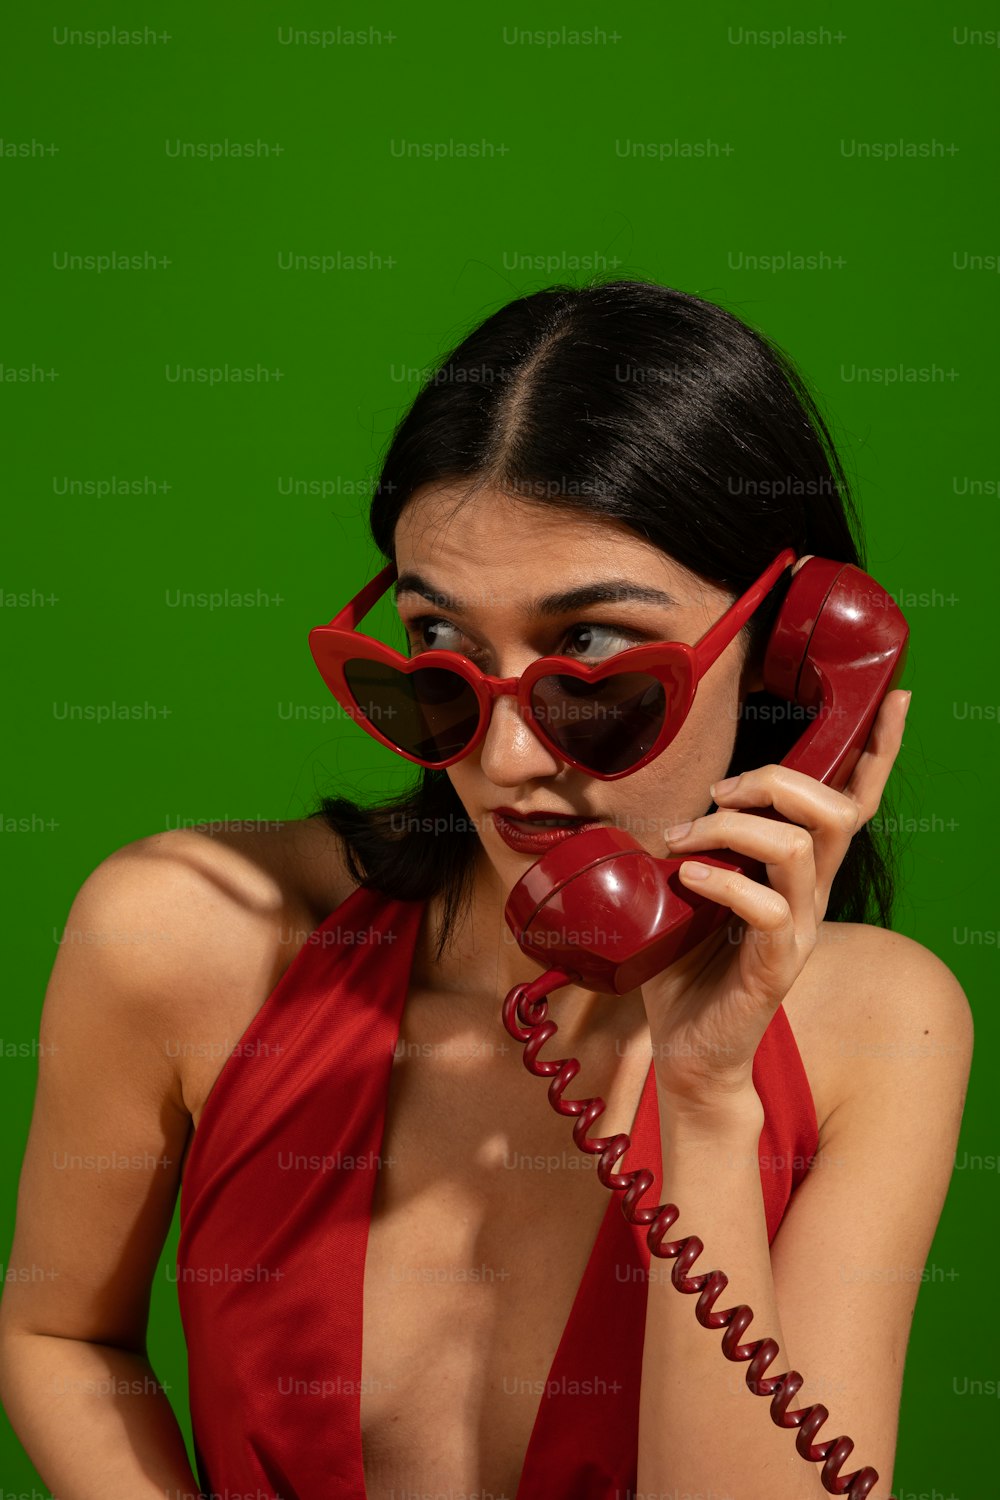 Una donna in un vestito rosso che parla su un telefono rosso